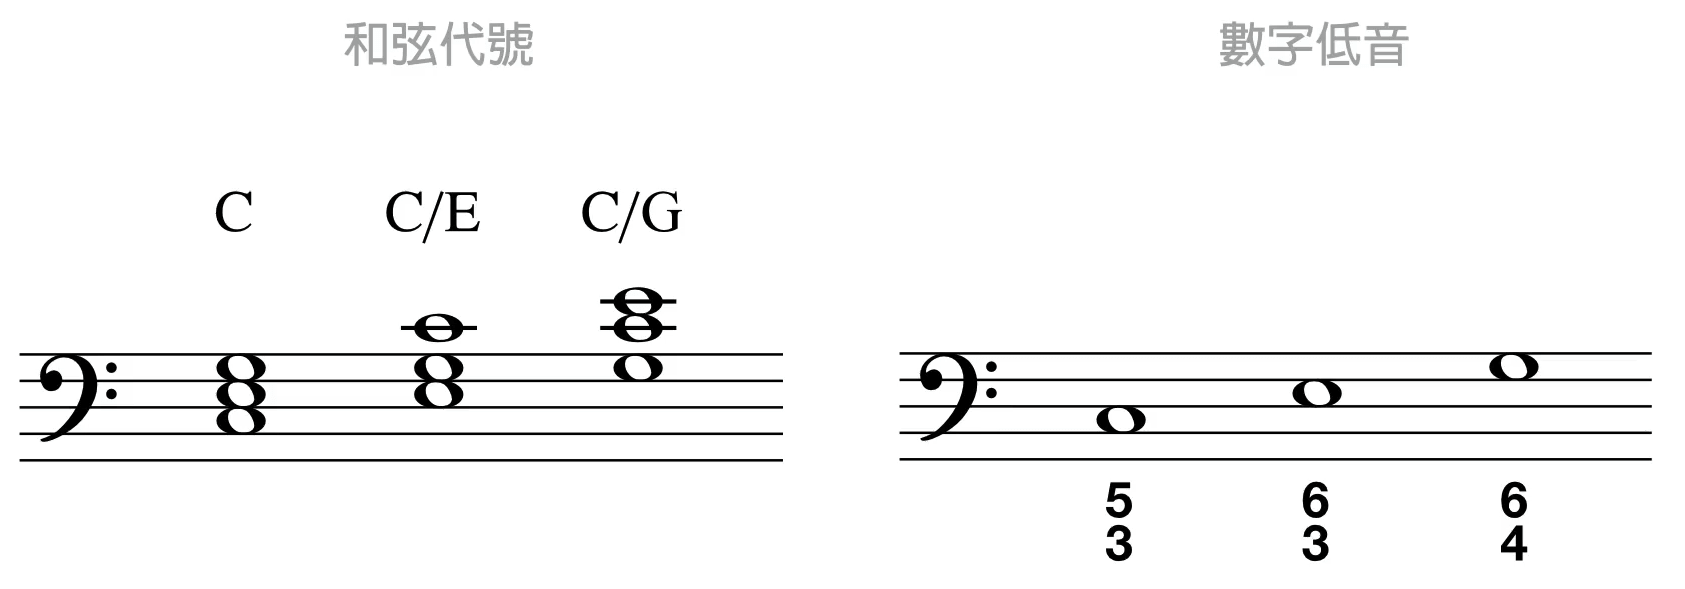 转位和弦的写法